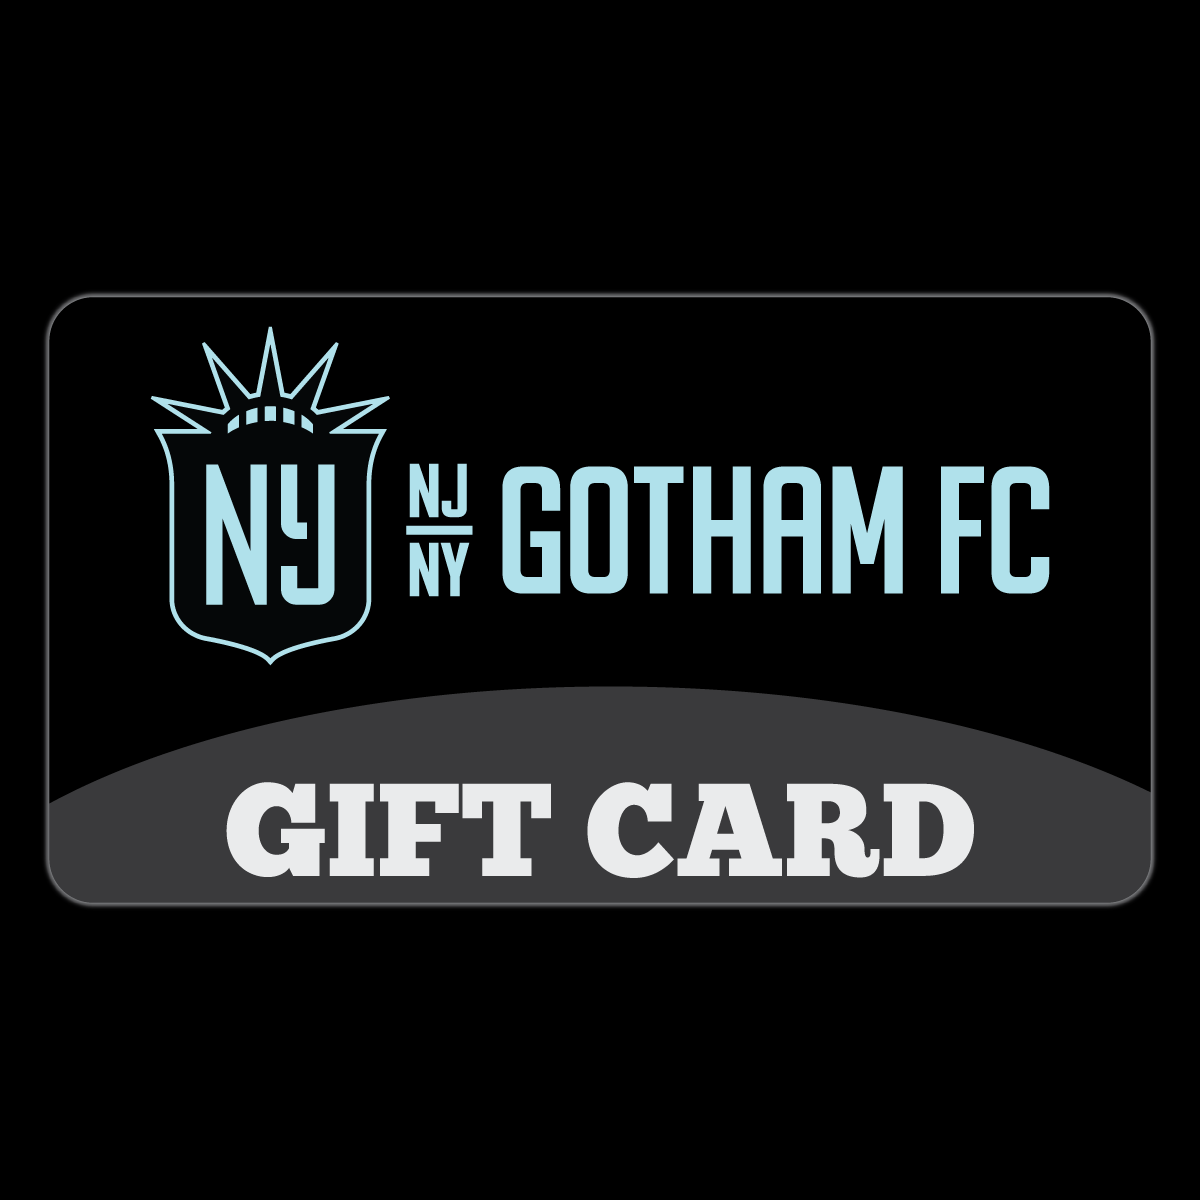 GOTHAM FC SHOP - GIFT CARD